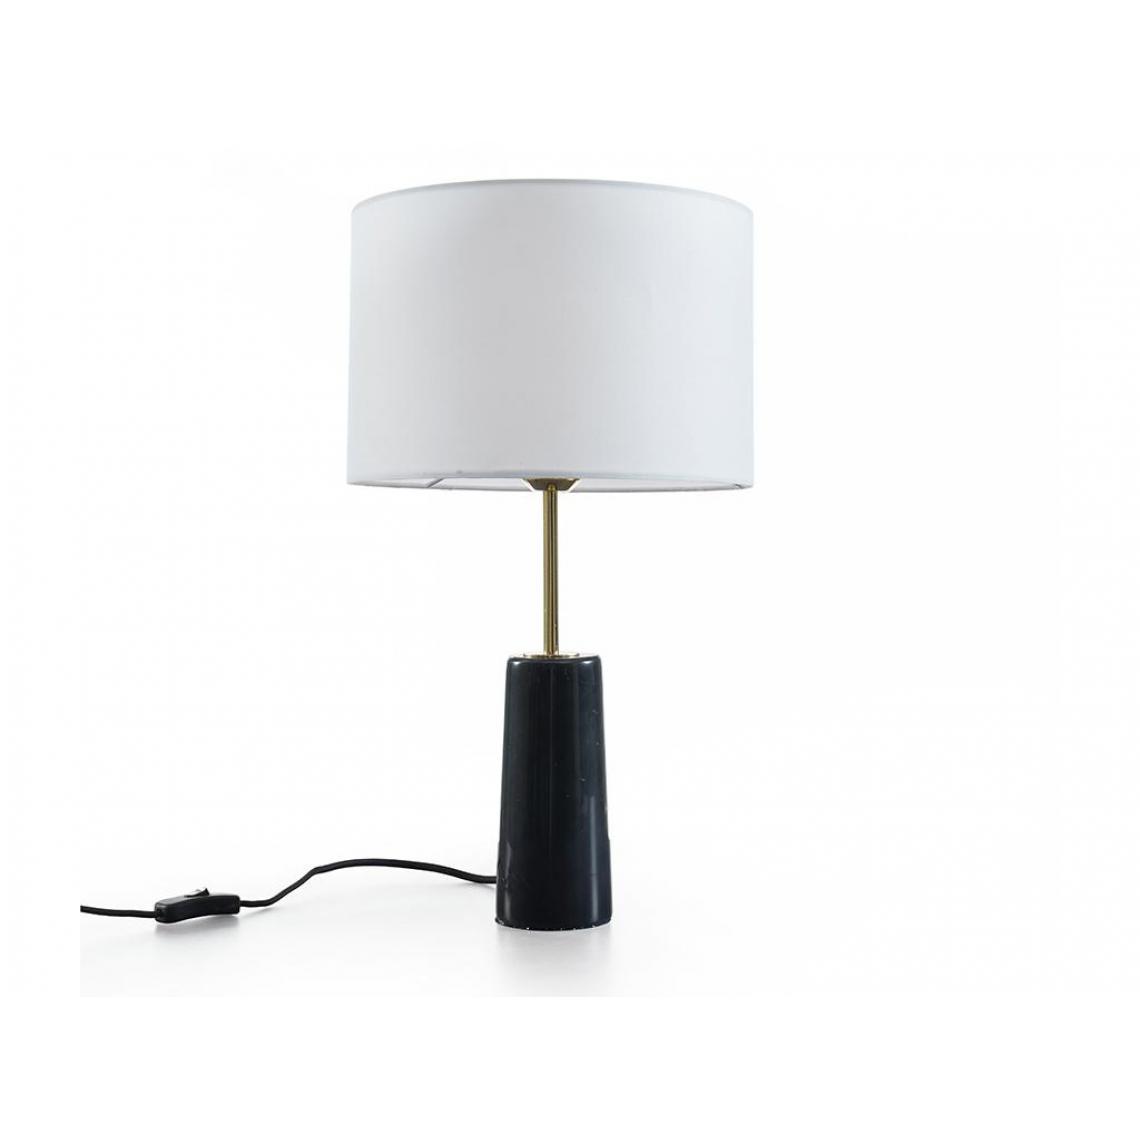 Vente-Unique - Lampe MERPLE - Lampes à poser